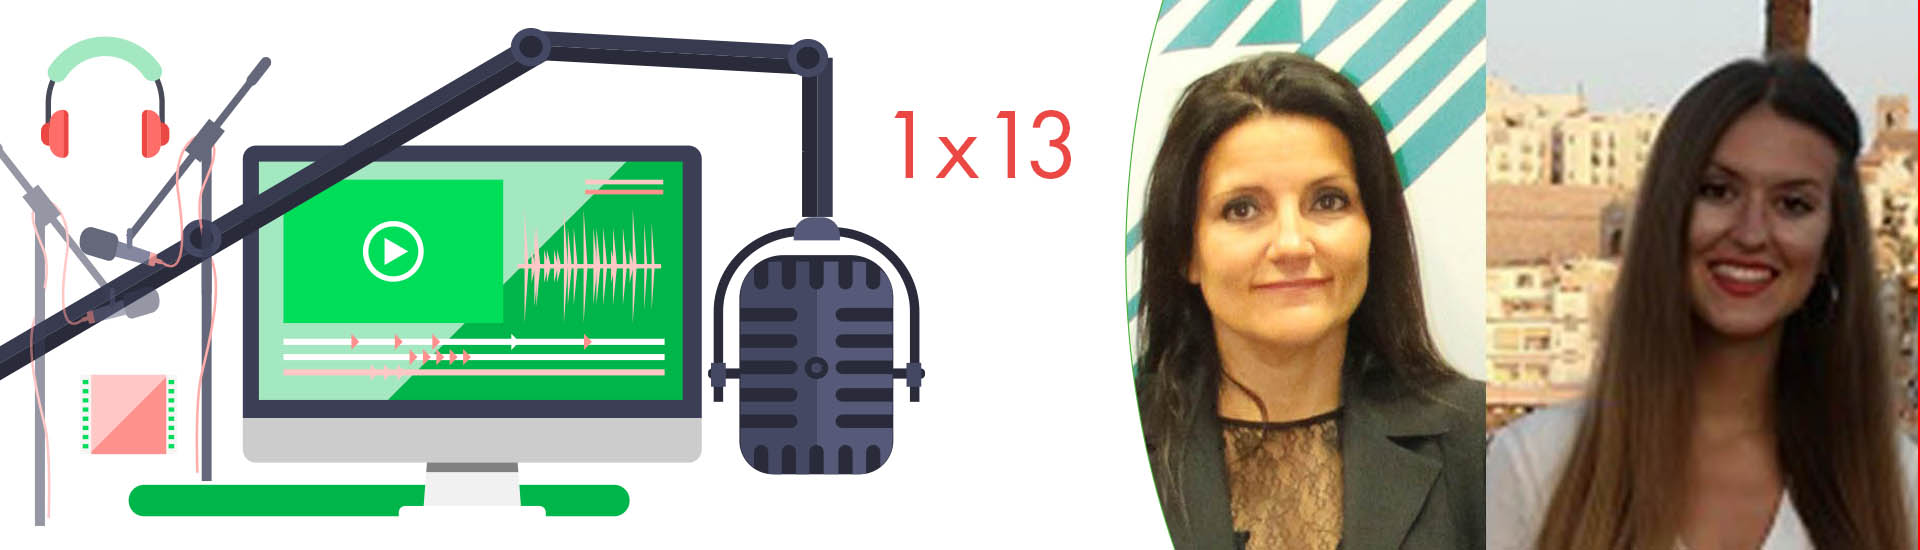 Podcast FM 1x13: Hablamos de la calidad y el medioambiente de la Mutua